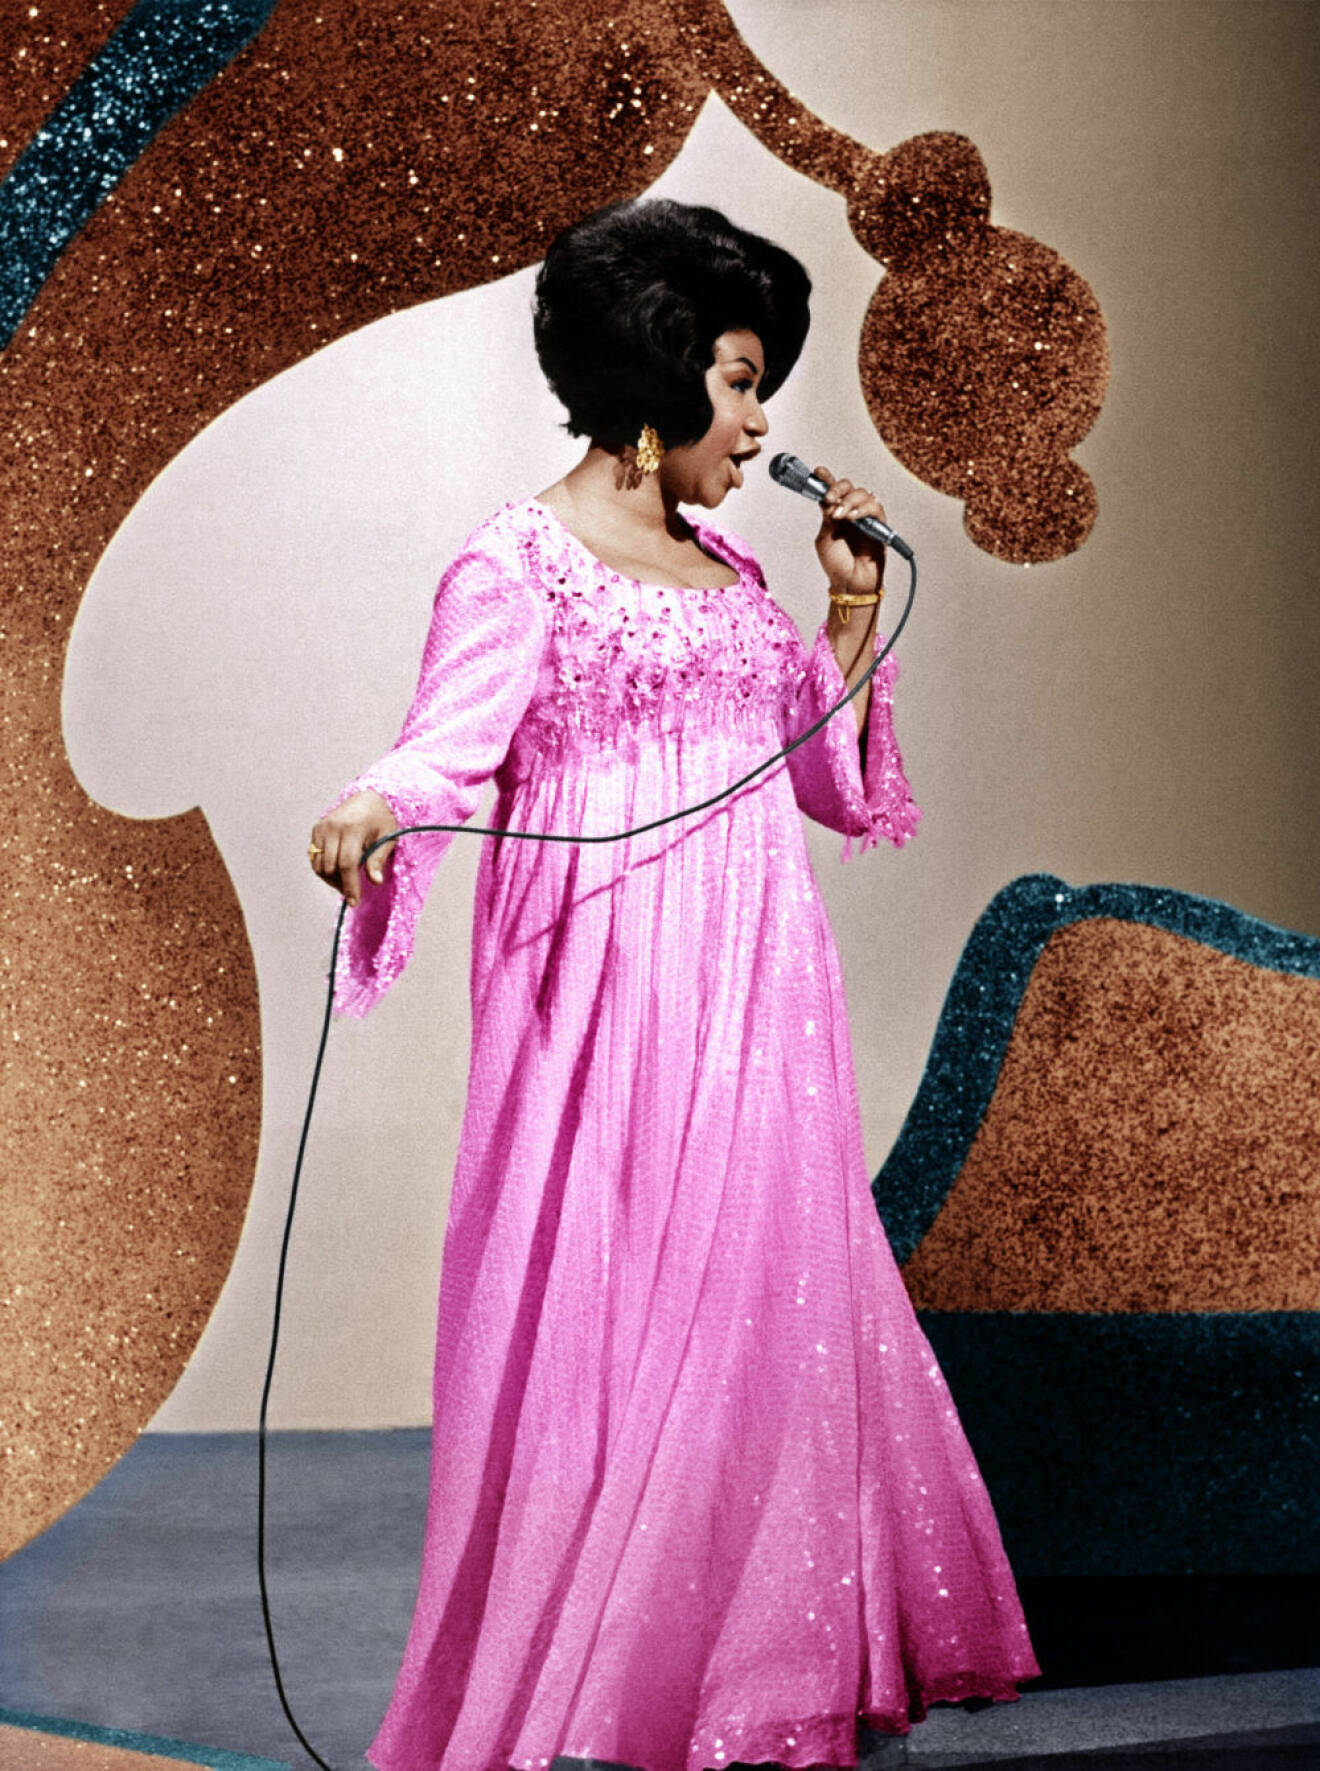 Aretha Franklin 1969. 